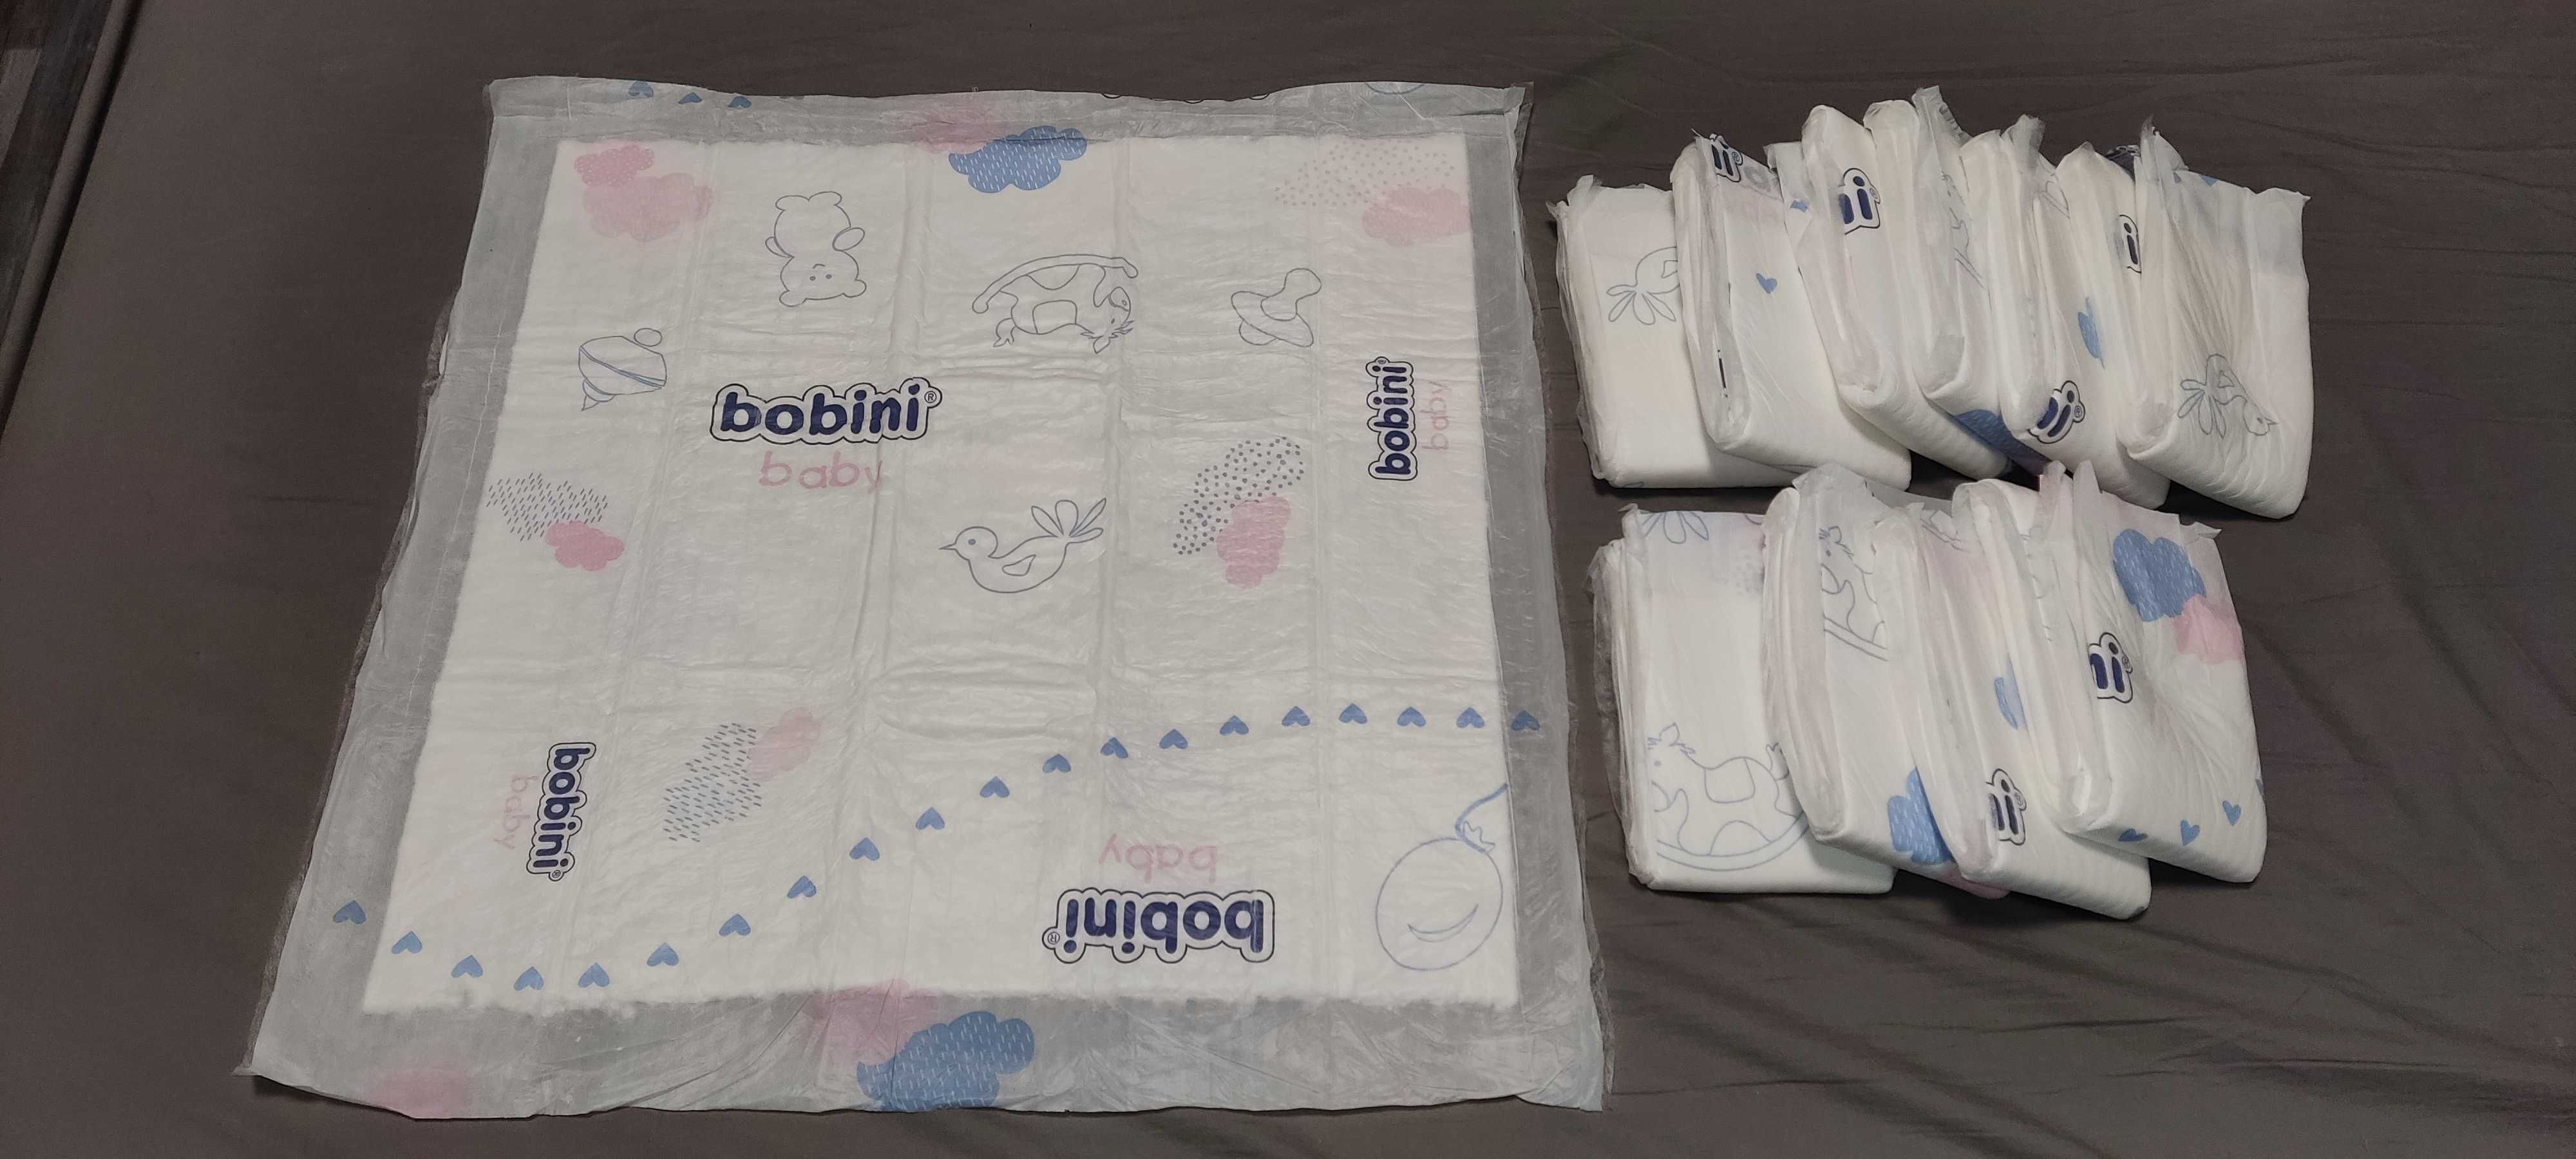 Podkłady higieniczne BOBINI Baby 10 + 1szt. gratis